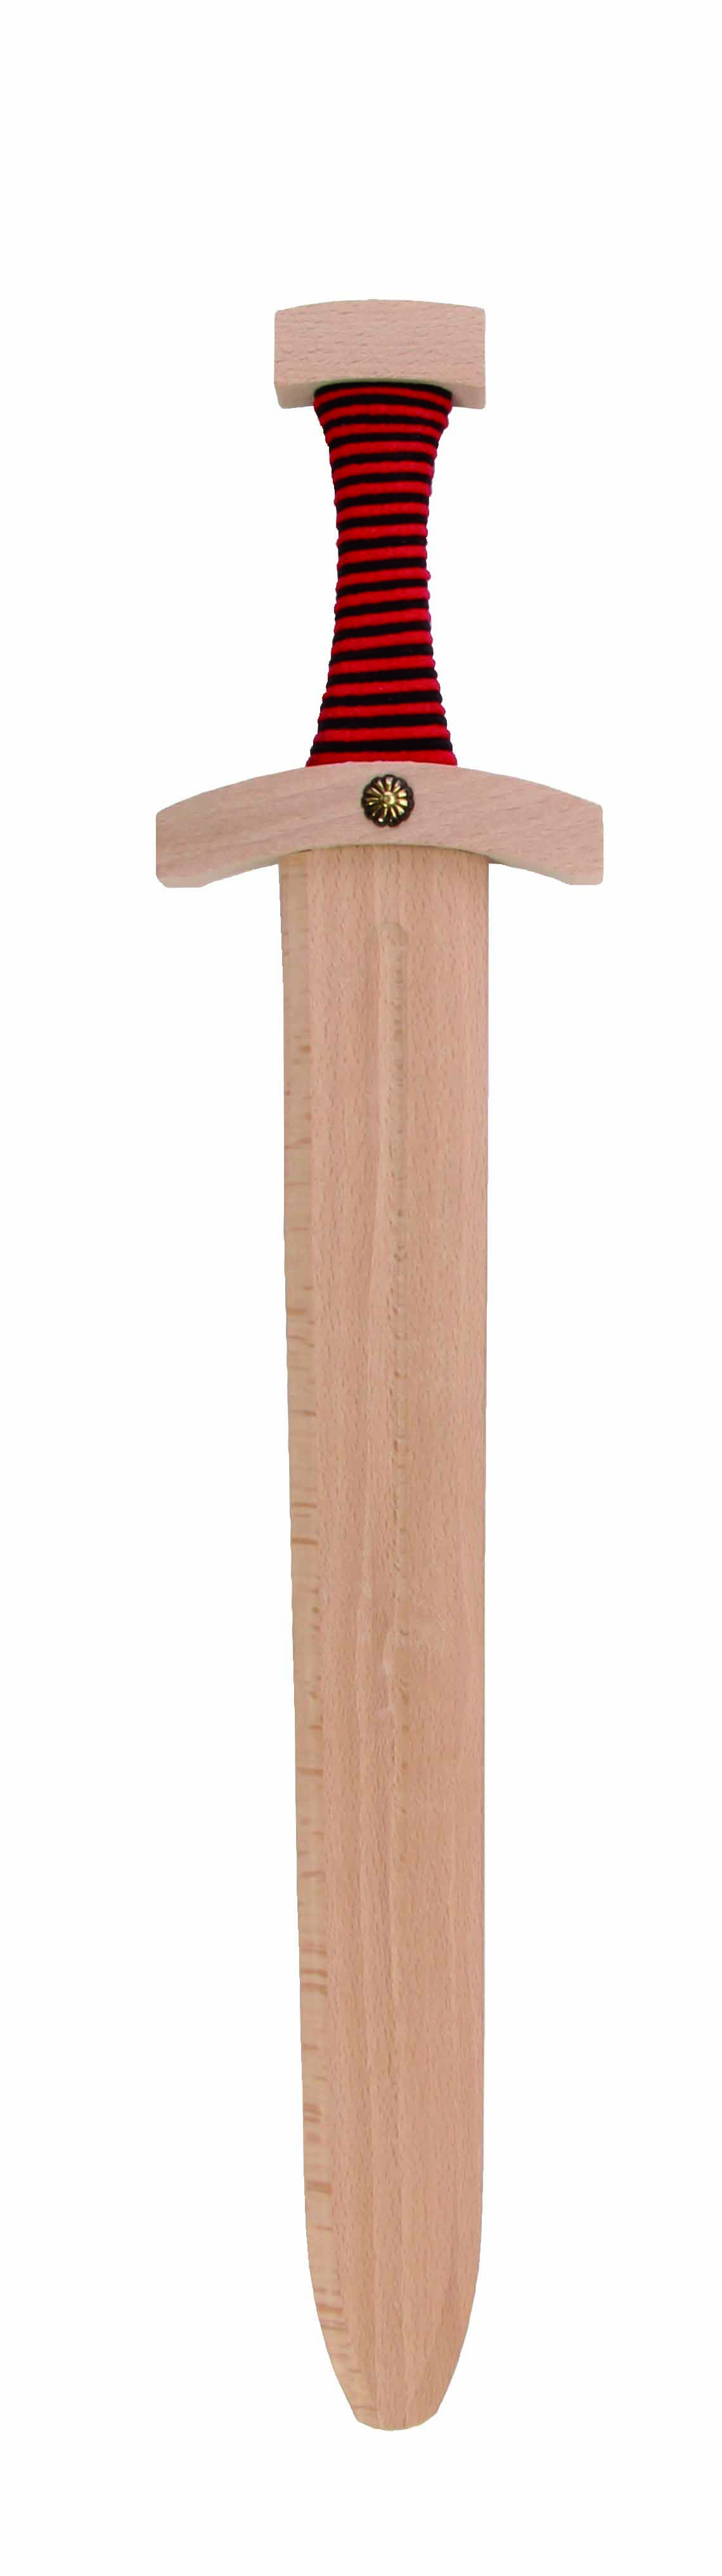 Normannen Spiel-Schwert mit Hohlkehle, 48 cm lang